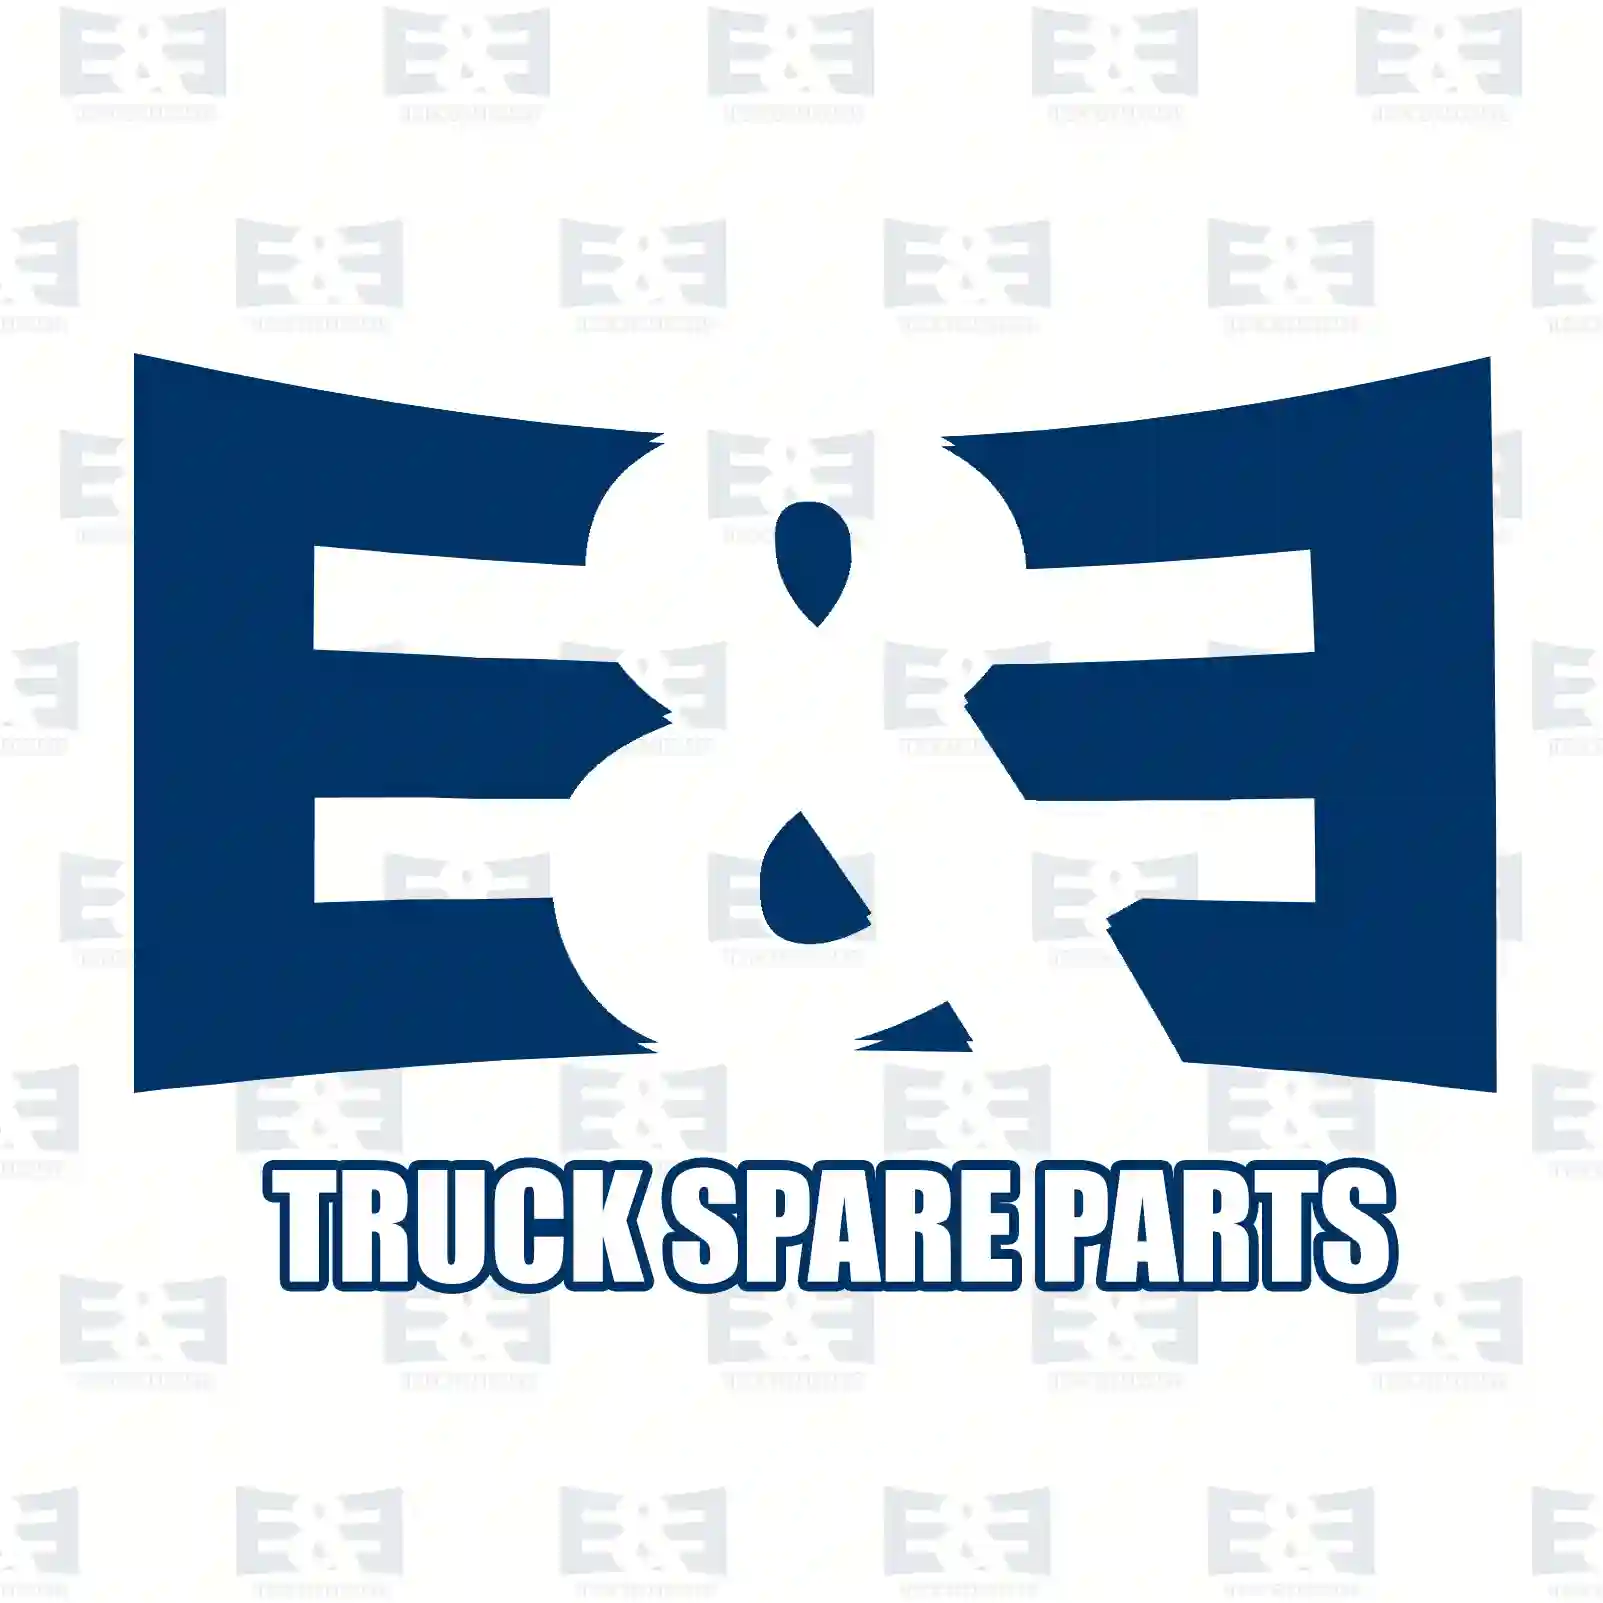 Oil seal, 2E2270537, 81965010692, 0109979446, ||  2E2270537 E&E Truck Spare Parts | Truck Spare Parts, Auotomotive Spare Parts Oil seal, 2E2270537, 81965010692, 0109979446, ||  2E2270537 E&E Truck Spare Parts | Truck Spare Parts, Auotomotive Spare Parts